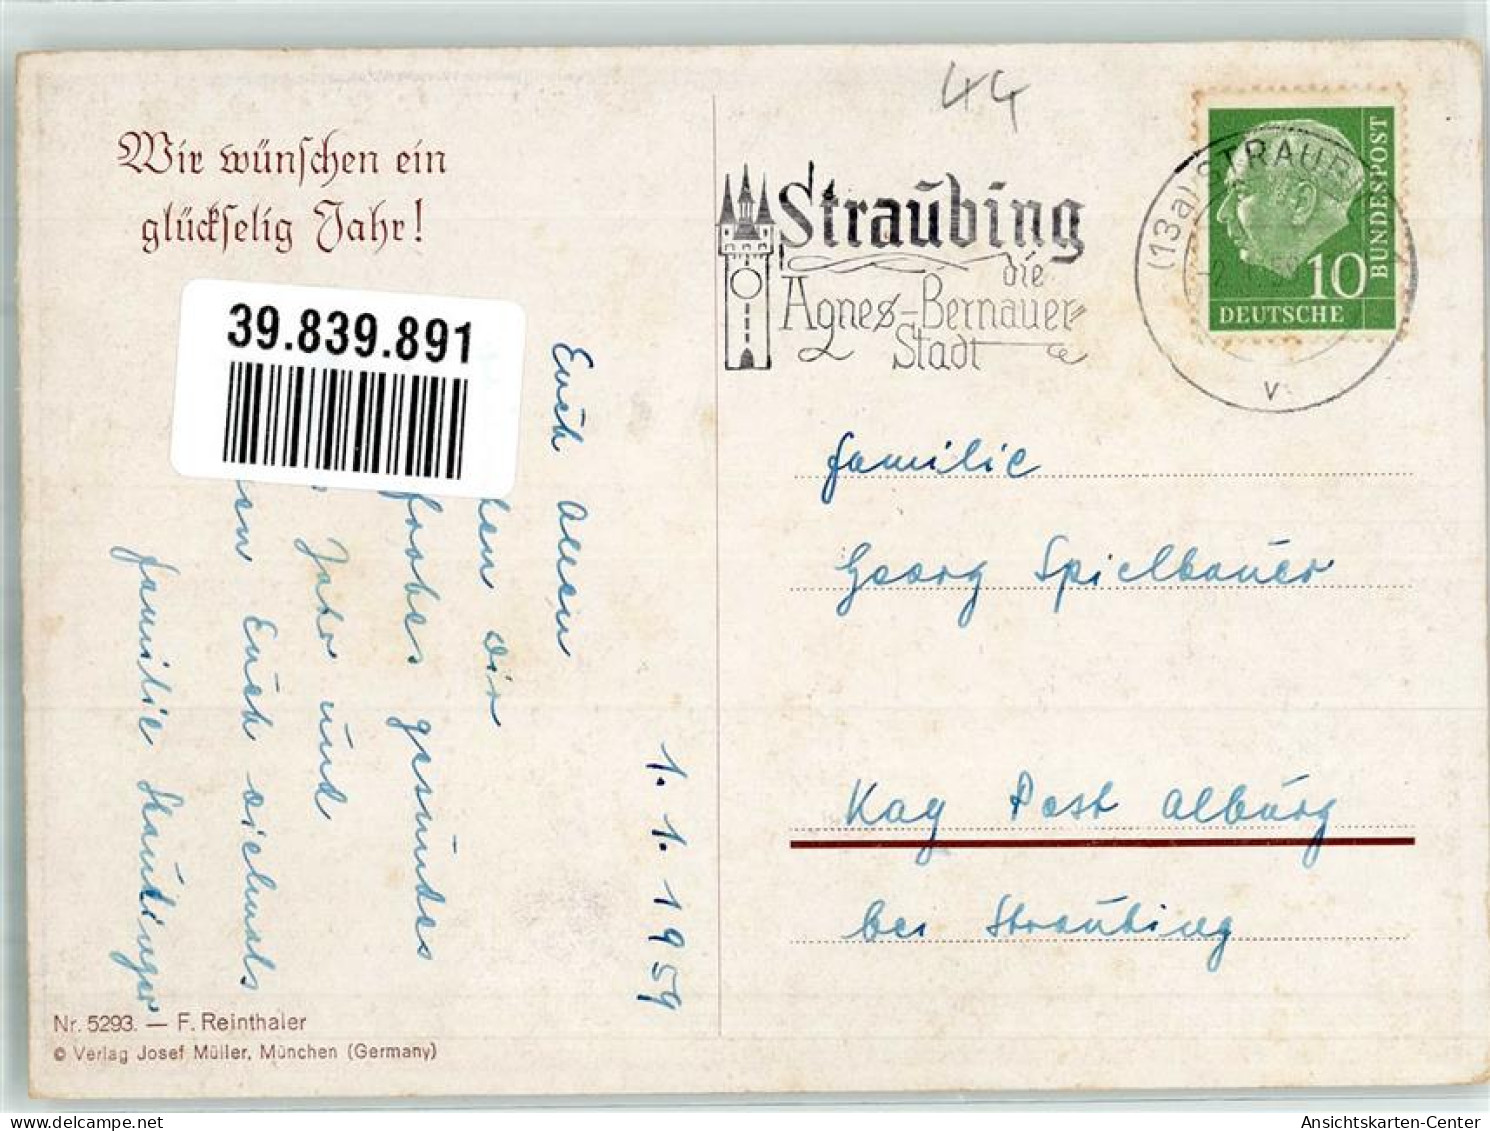 39839891 - Sign. Reinthaler F. Kinder Verlag Josef Mueller Nr. 5293 - Nouvel An